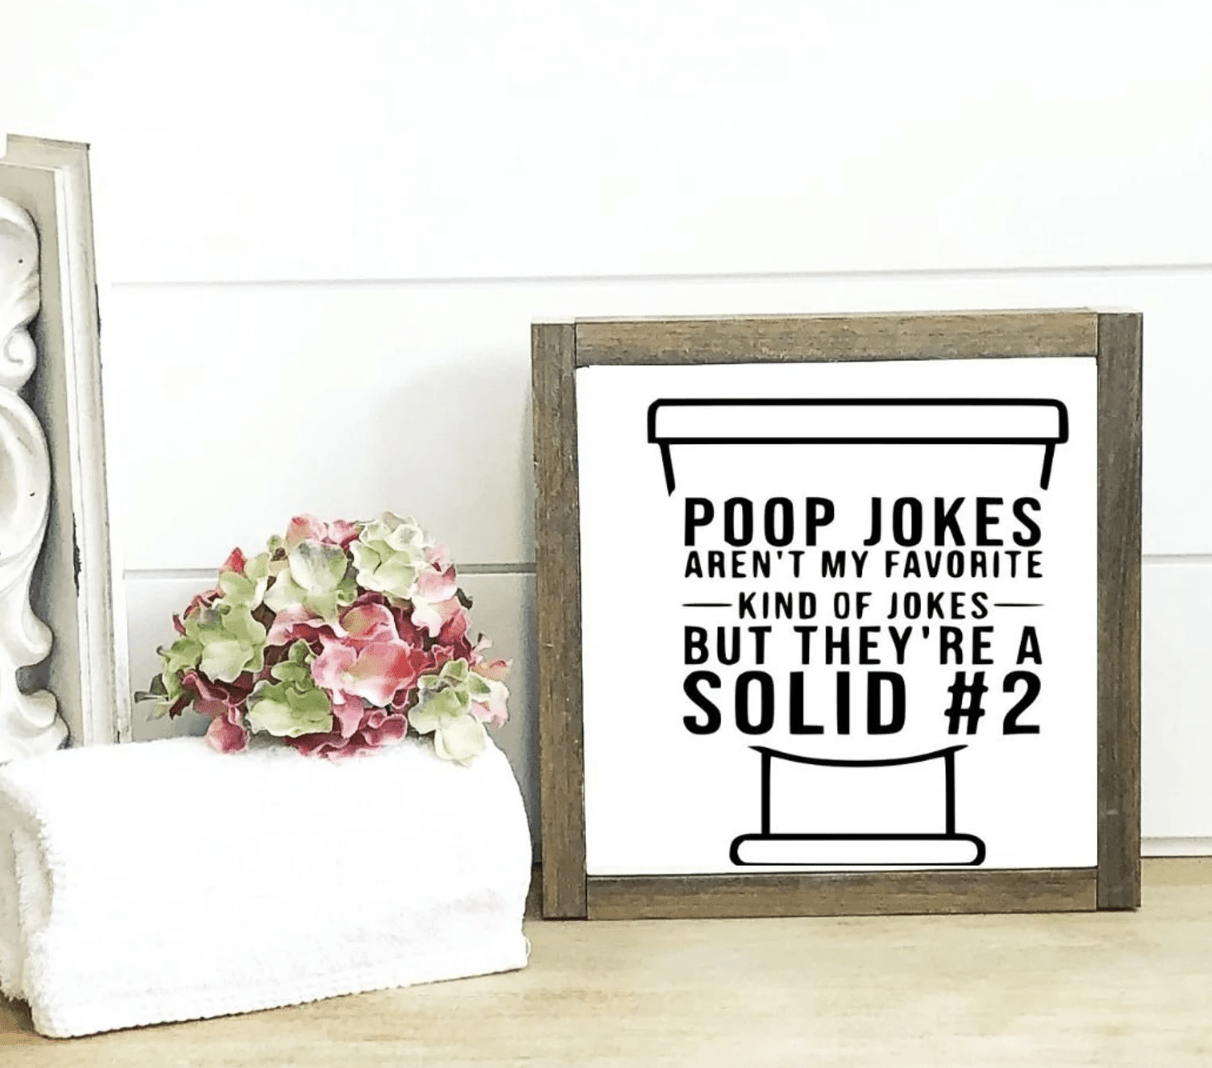 poop jokes rustic wood frame bathroom sign white shiplap background flower towel